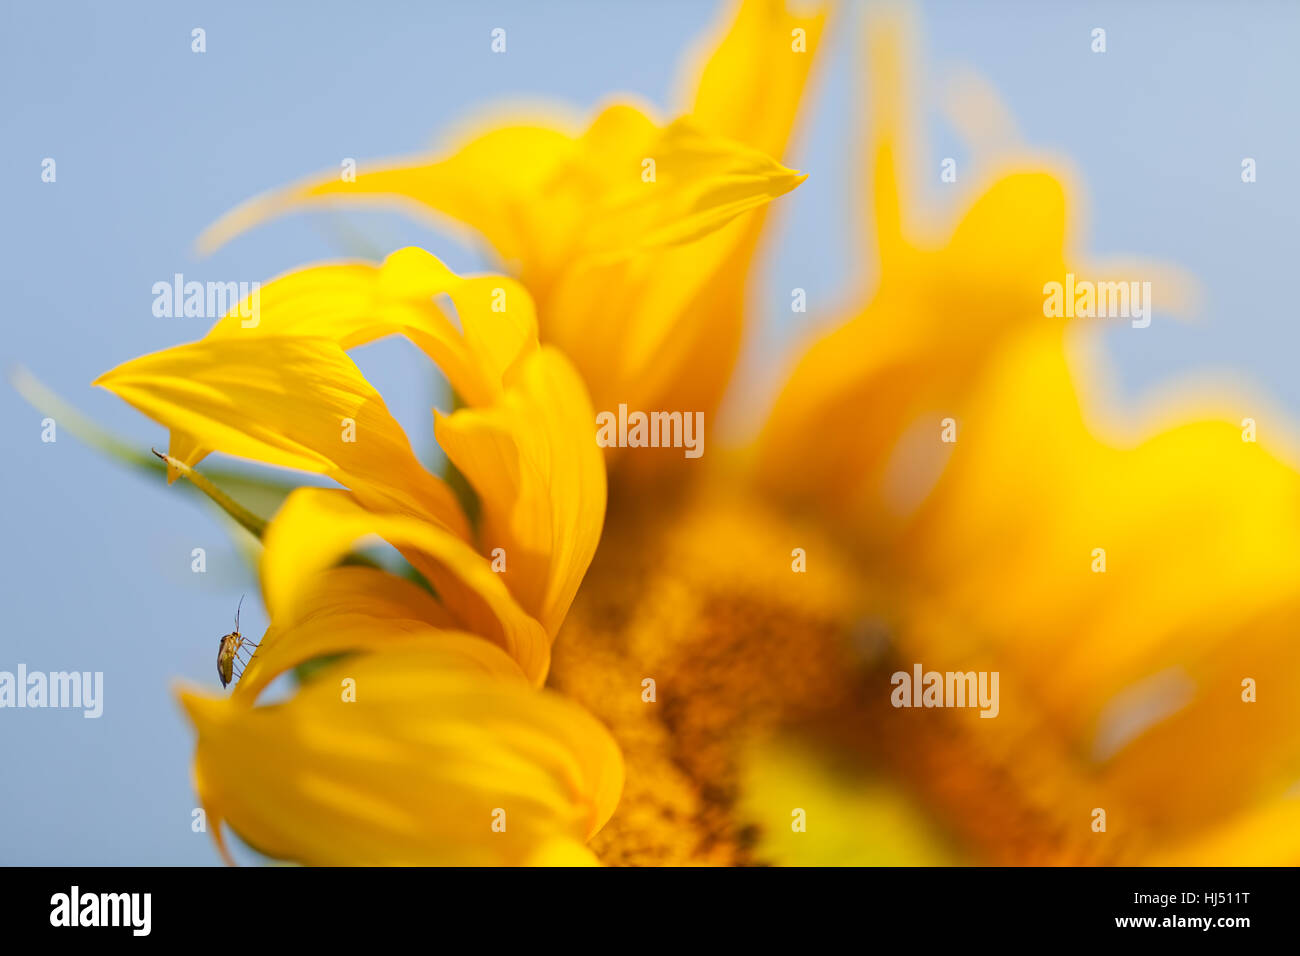 Teil der Blume Sonnenblume, geringe Schärfentiefe Hinweis Stockfoto